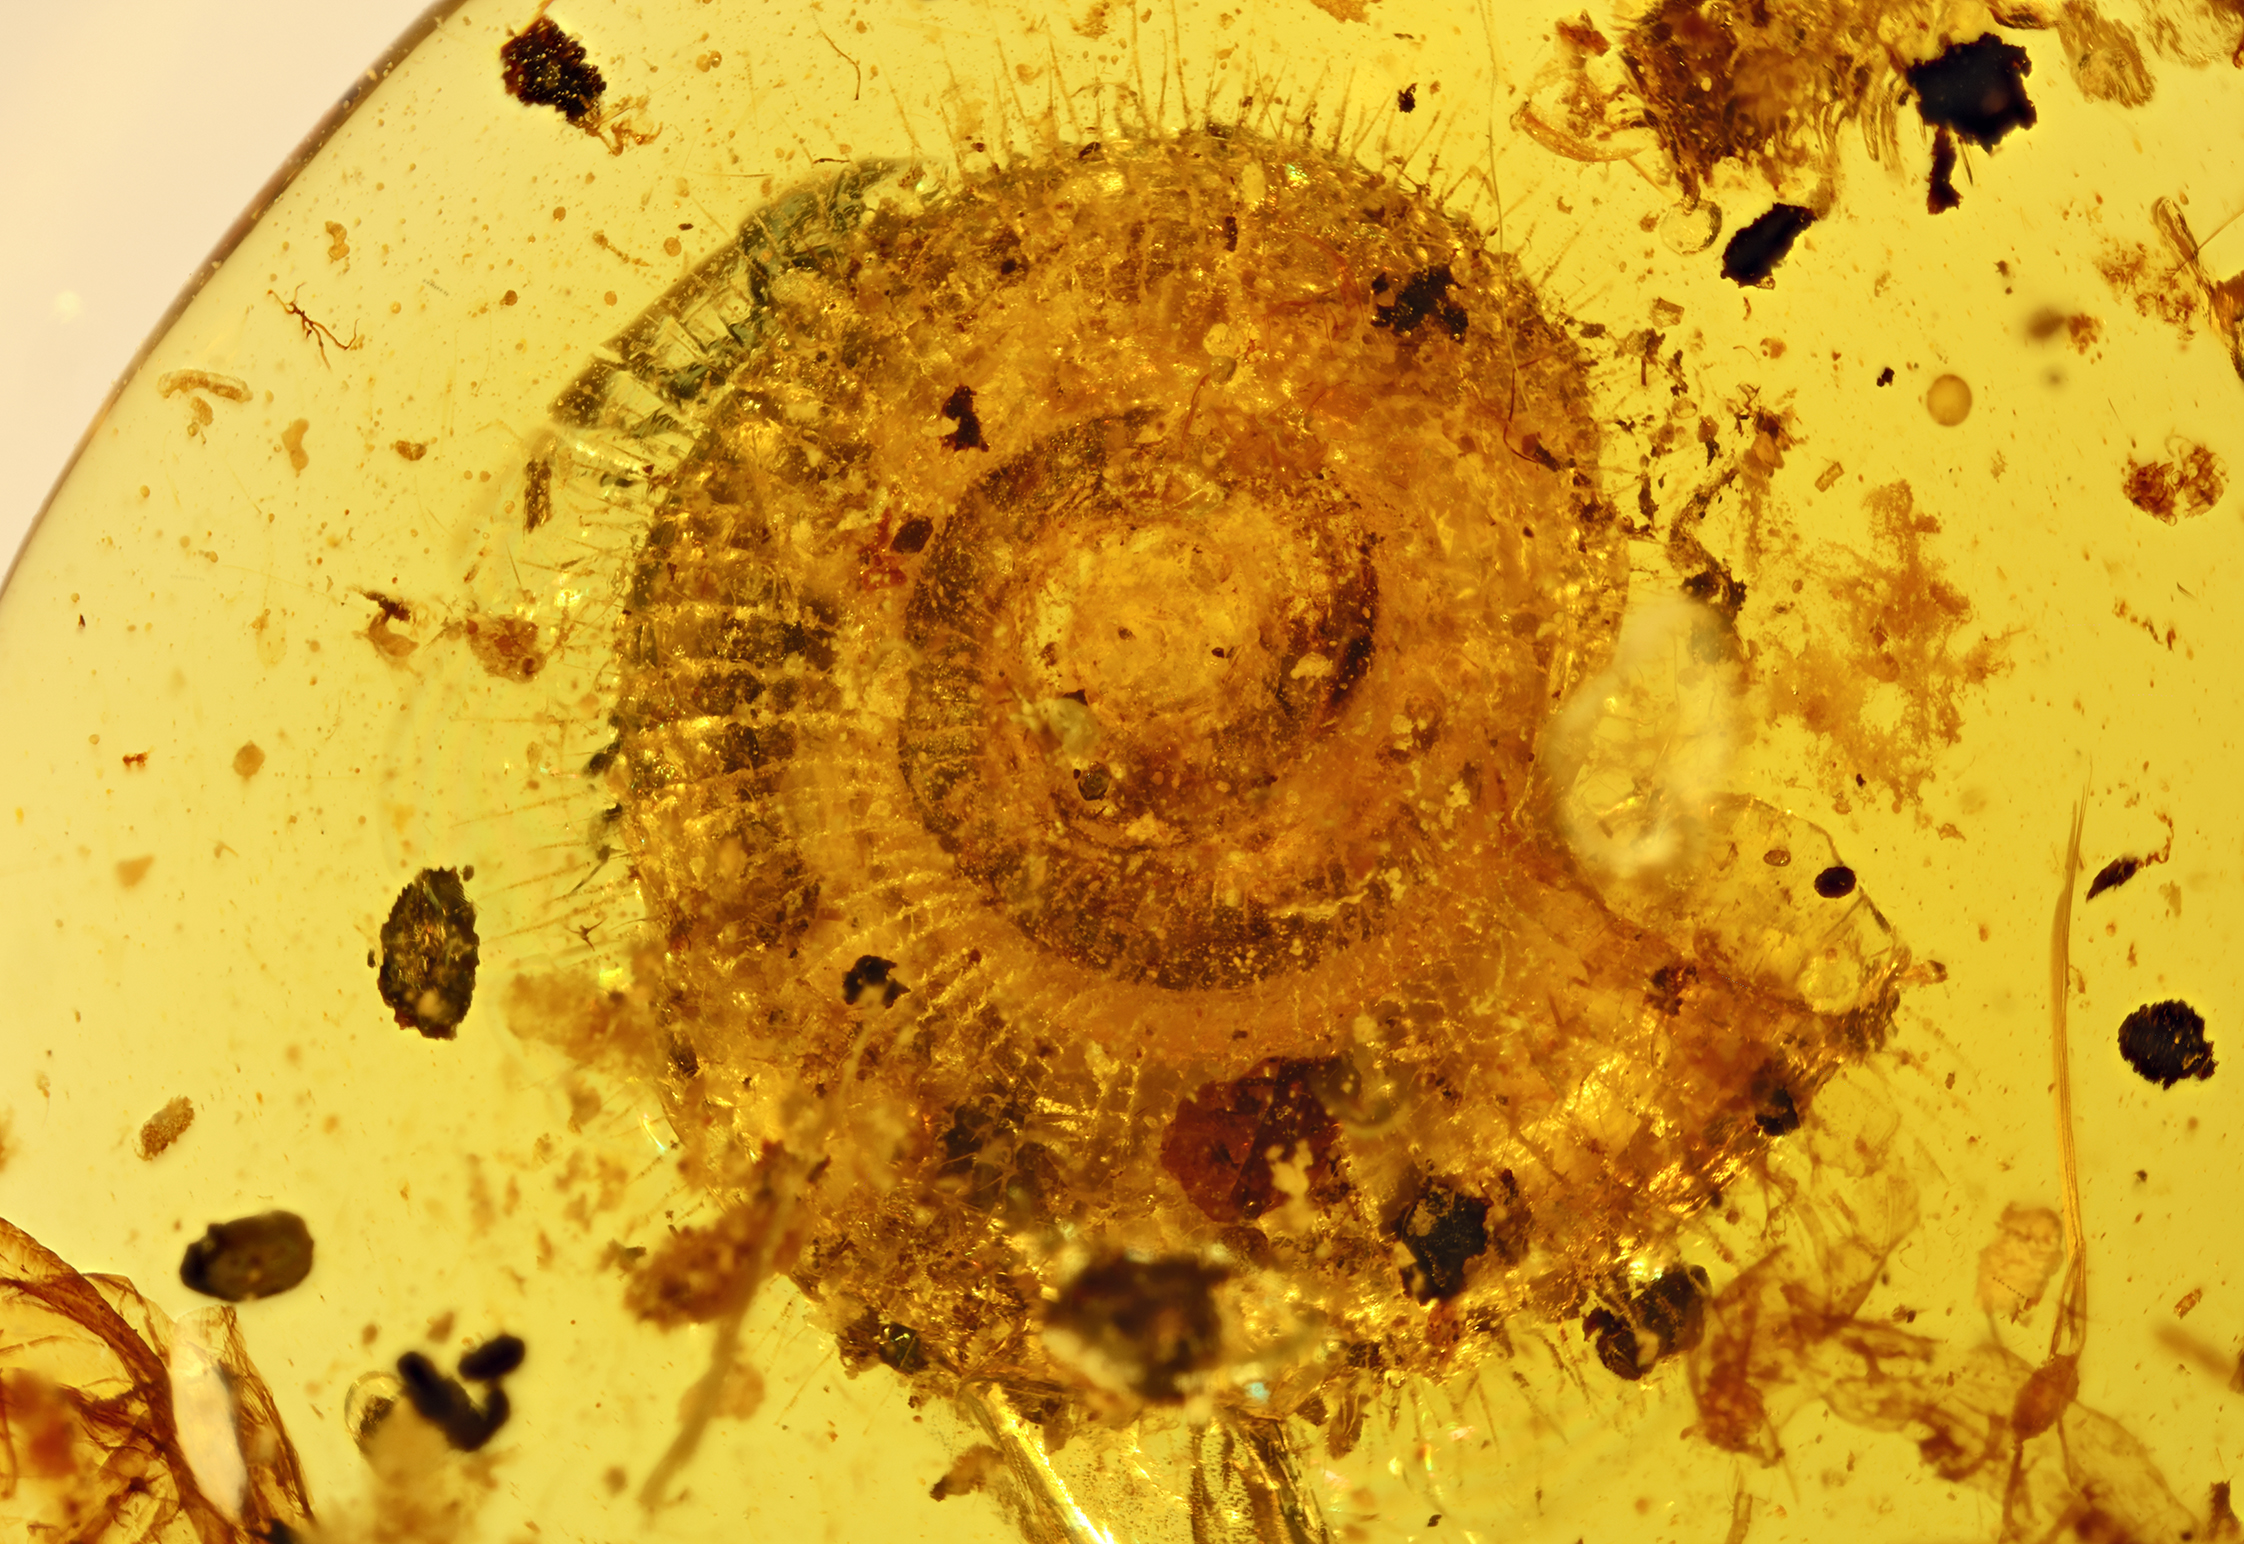 1億年前の毛の生えたカタツムリ化石を発見 中国国内外の研究者